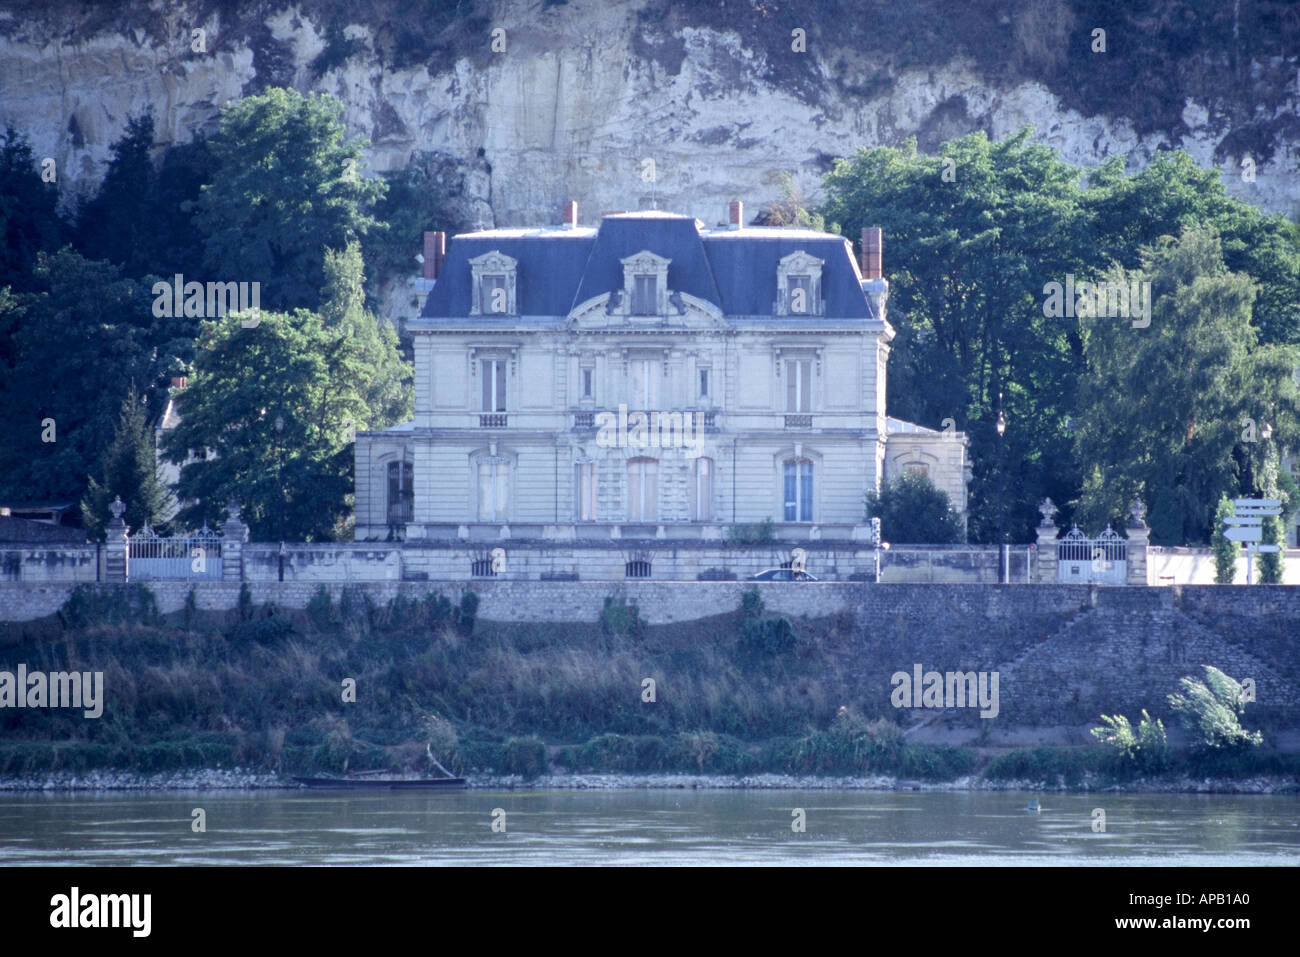 Hôtel particulier sur les bords de la Loire près de Saumur photographié d'une île de la Loire Vallée de la Loire France Banque D'Images